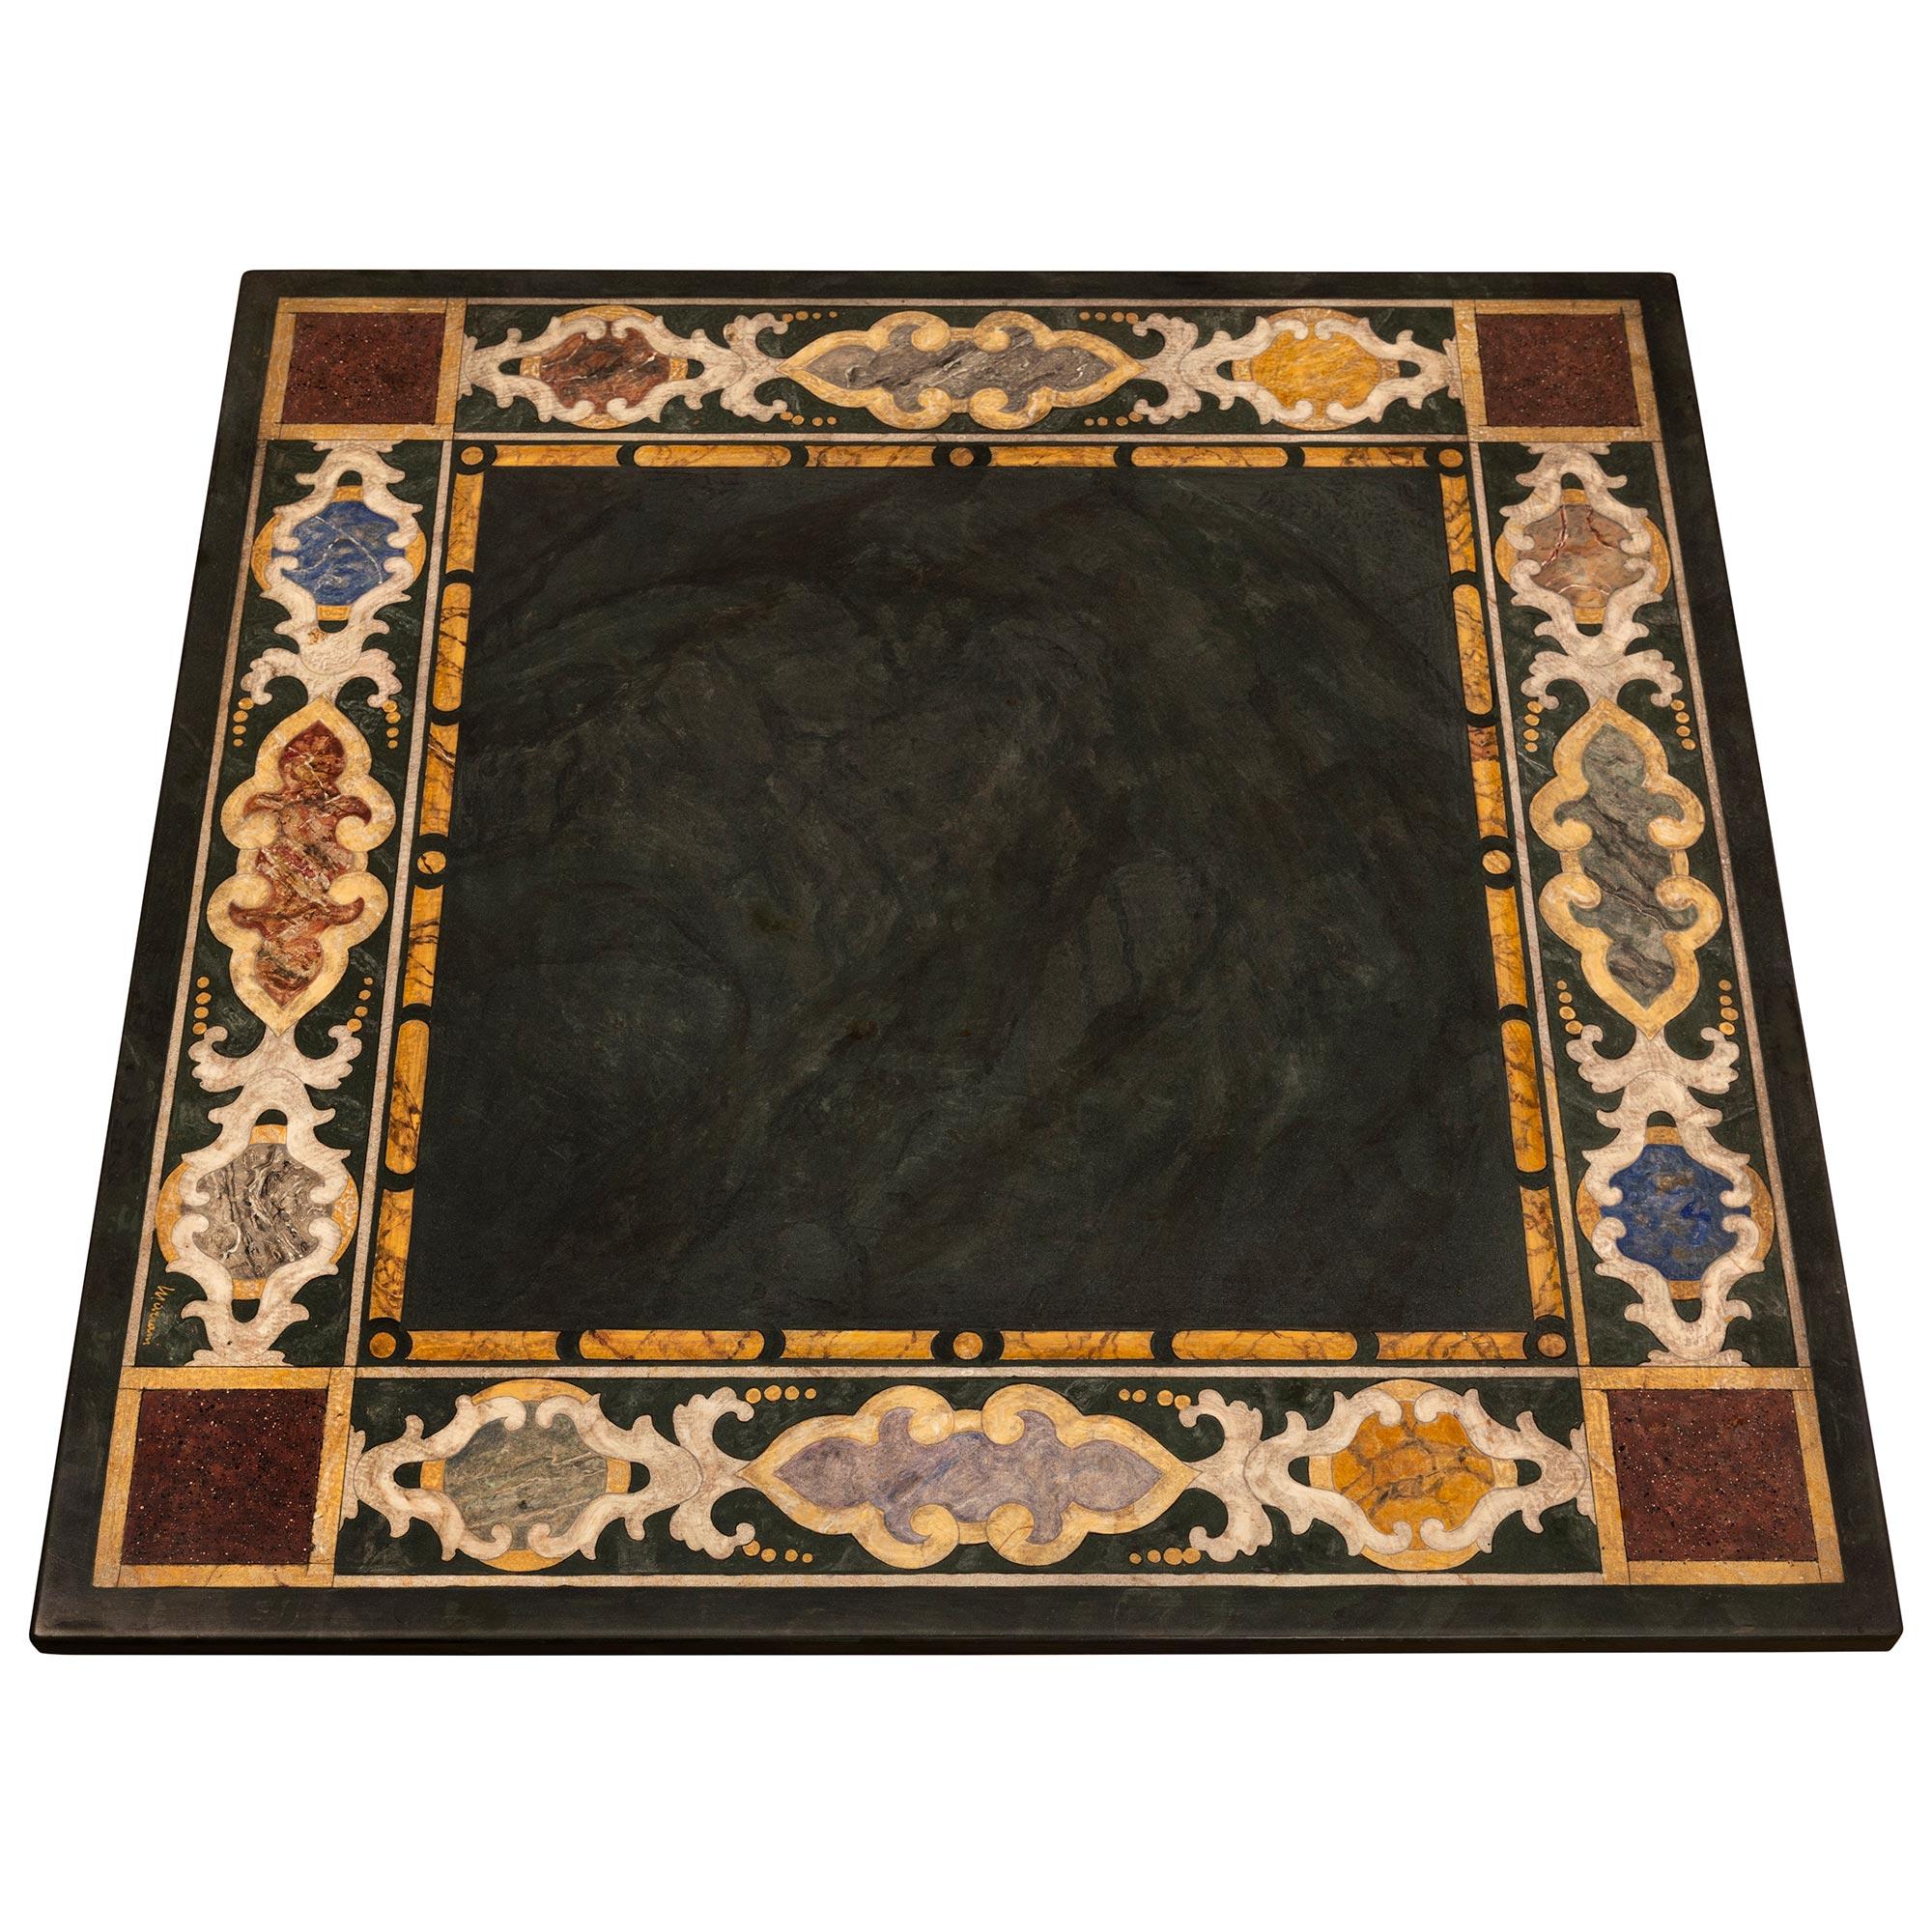 Table basse en marbre Scagliola et Rosso de Verona du 19ème siècle, très décorative. La table basse carrée est surélevée par un impressionnant chapiteau ionique inversé du XVIIIe siècle de Rosso de Verona, avec de superbes motifs à volutes et de